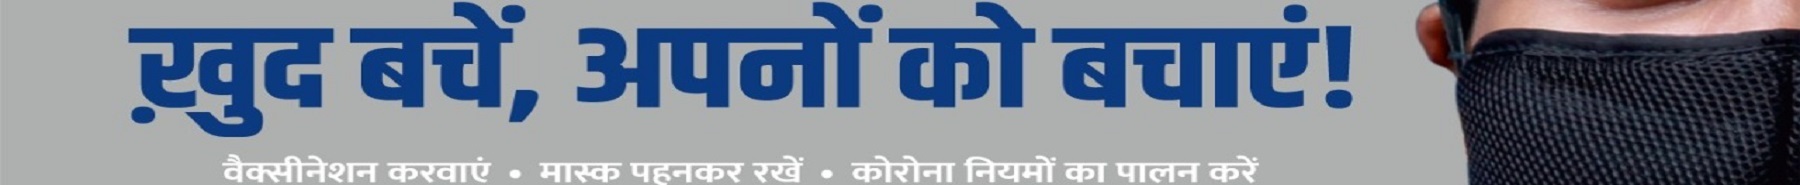 Inner Banner of Consumer Affairs